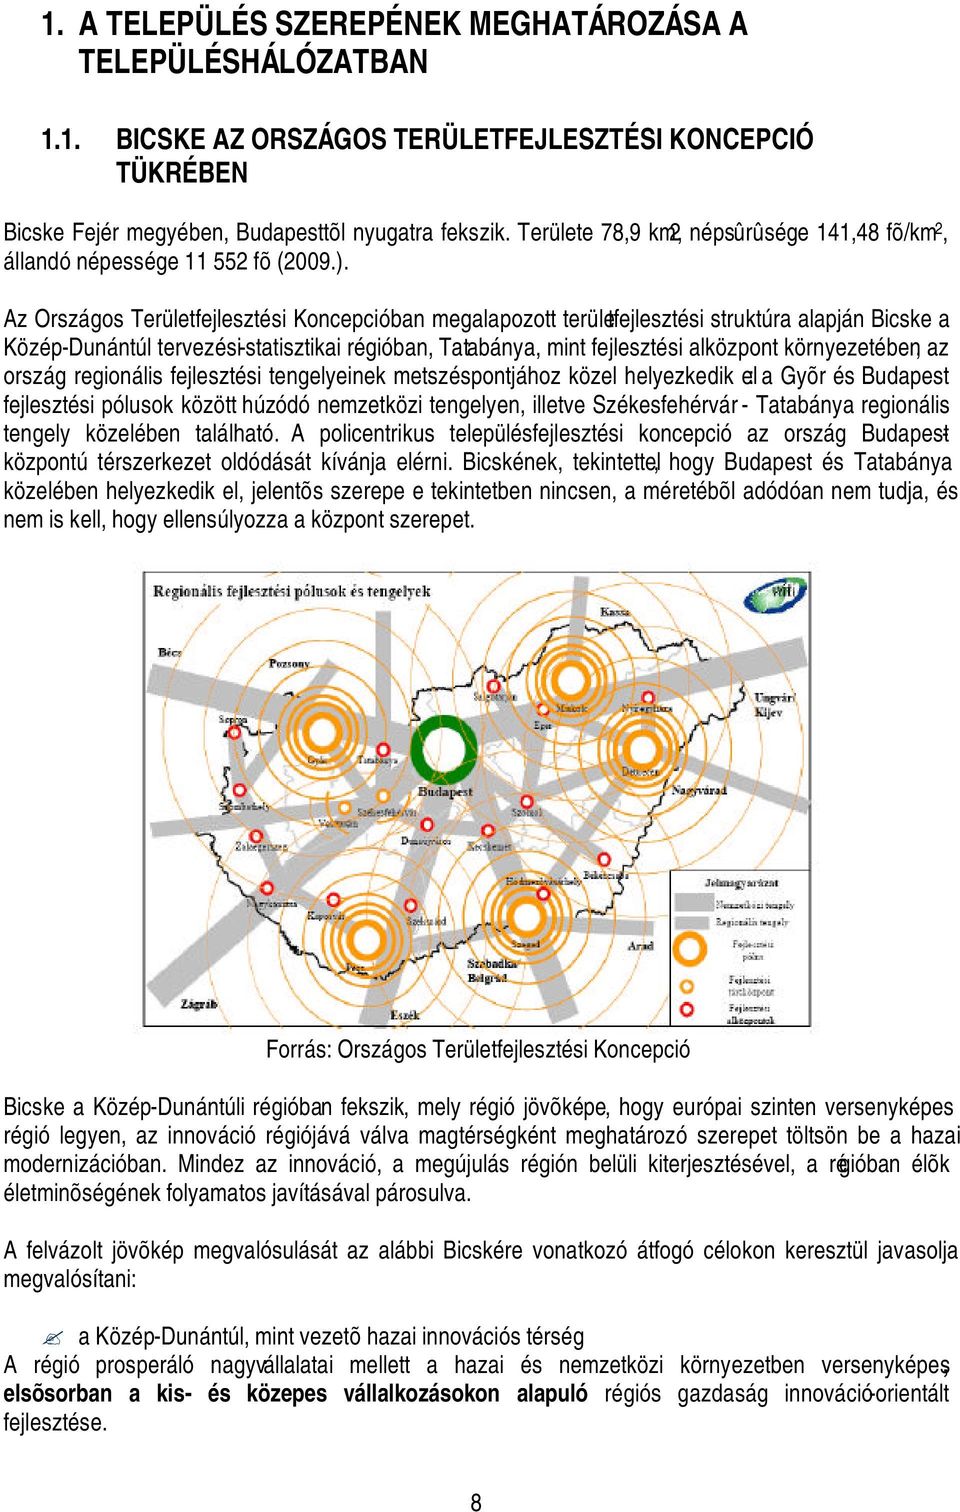 Az Országos Területfejlesztési Koncepcióban megalapozott területfejlesztési struktúra alapján Bicske a Közép-Dunántúl tervezési-statisztikai régióban, Tatabánya, mint fejlesztési alközpont